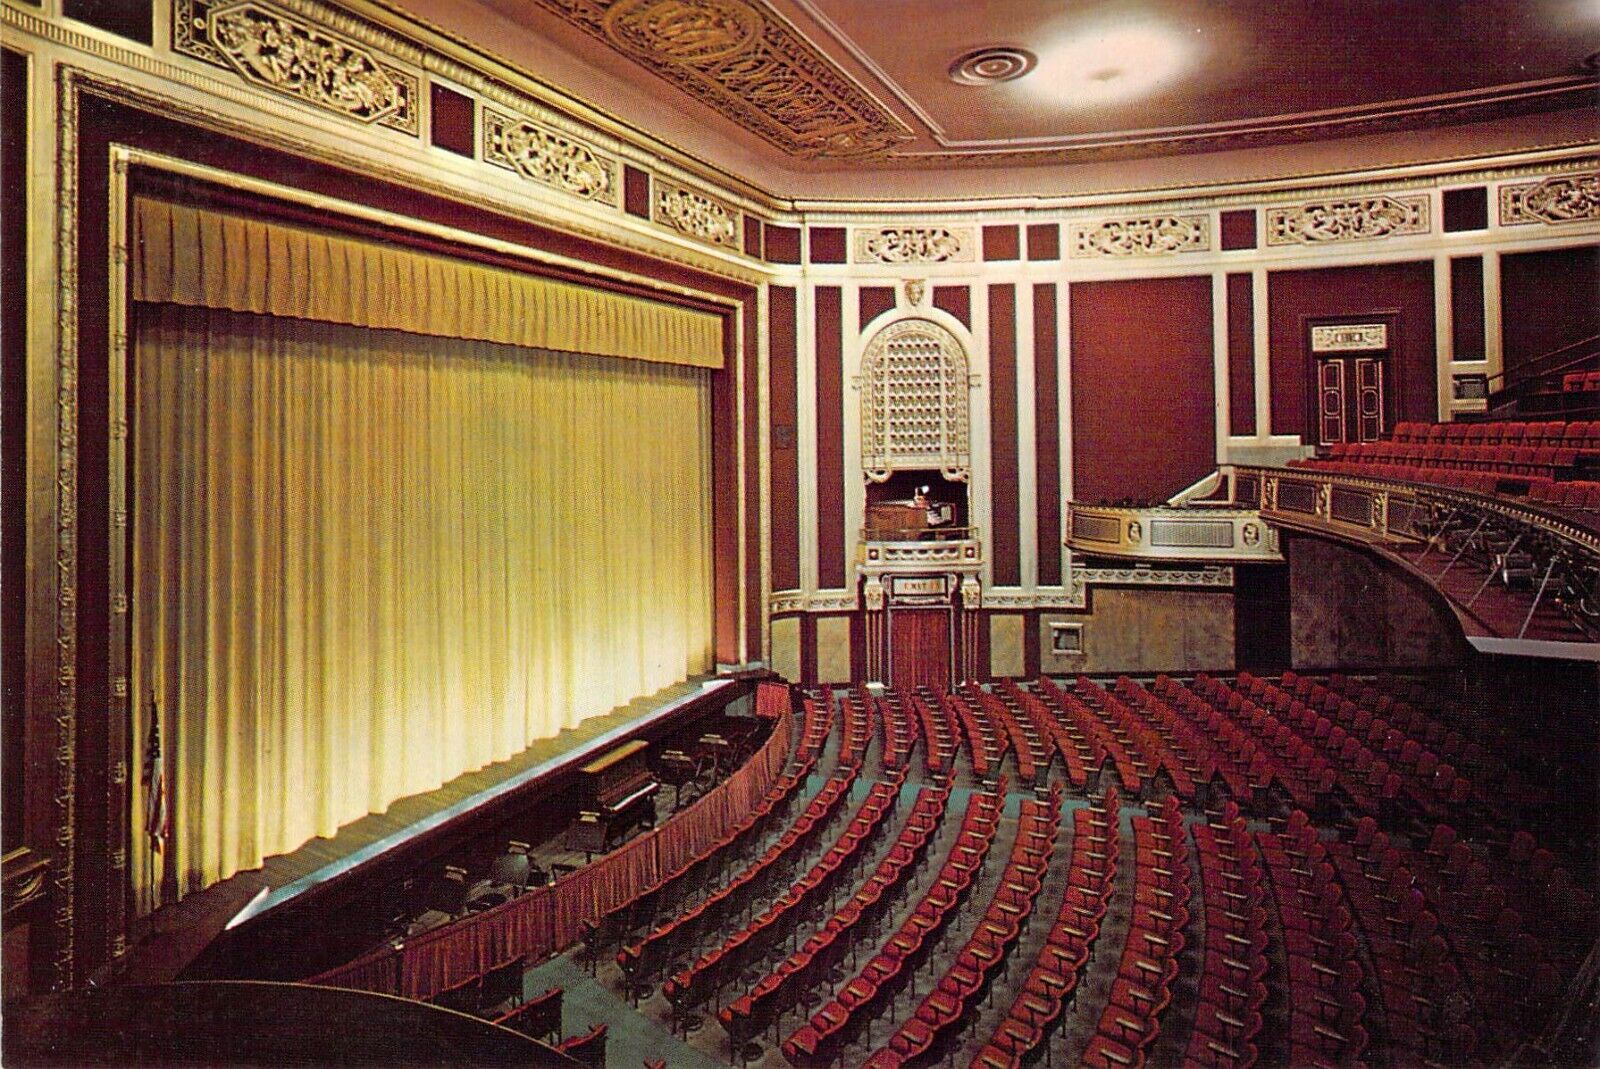 1966 MI Detroit Institute of Arts DIA Auditorium Theatre MINT 4x6 postcard CT36